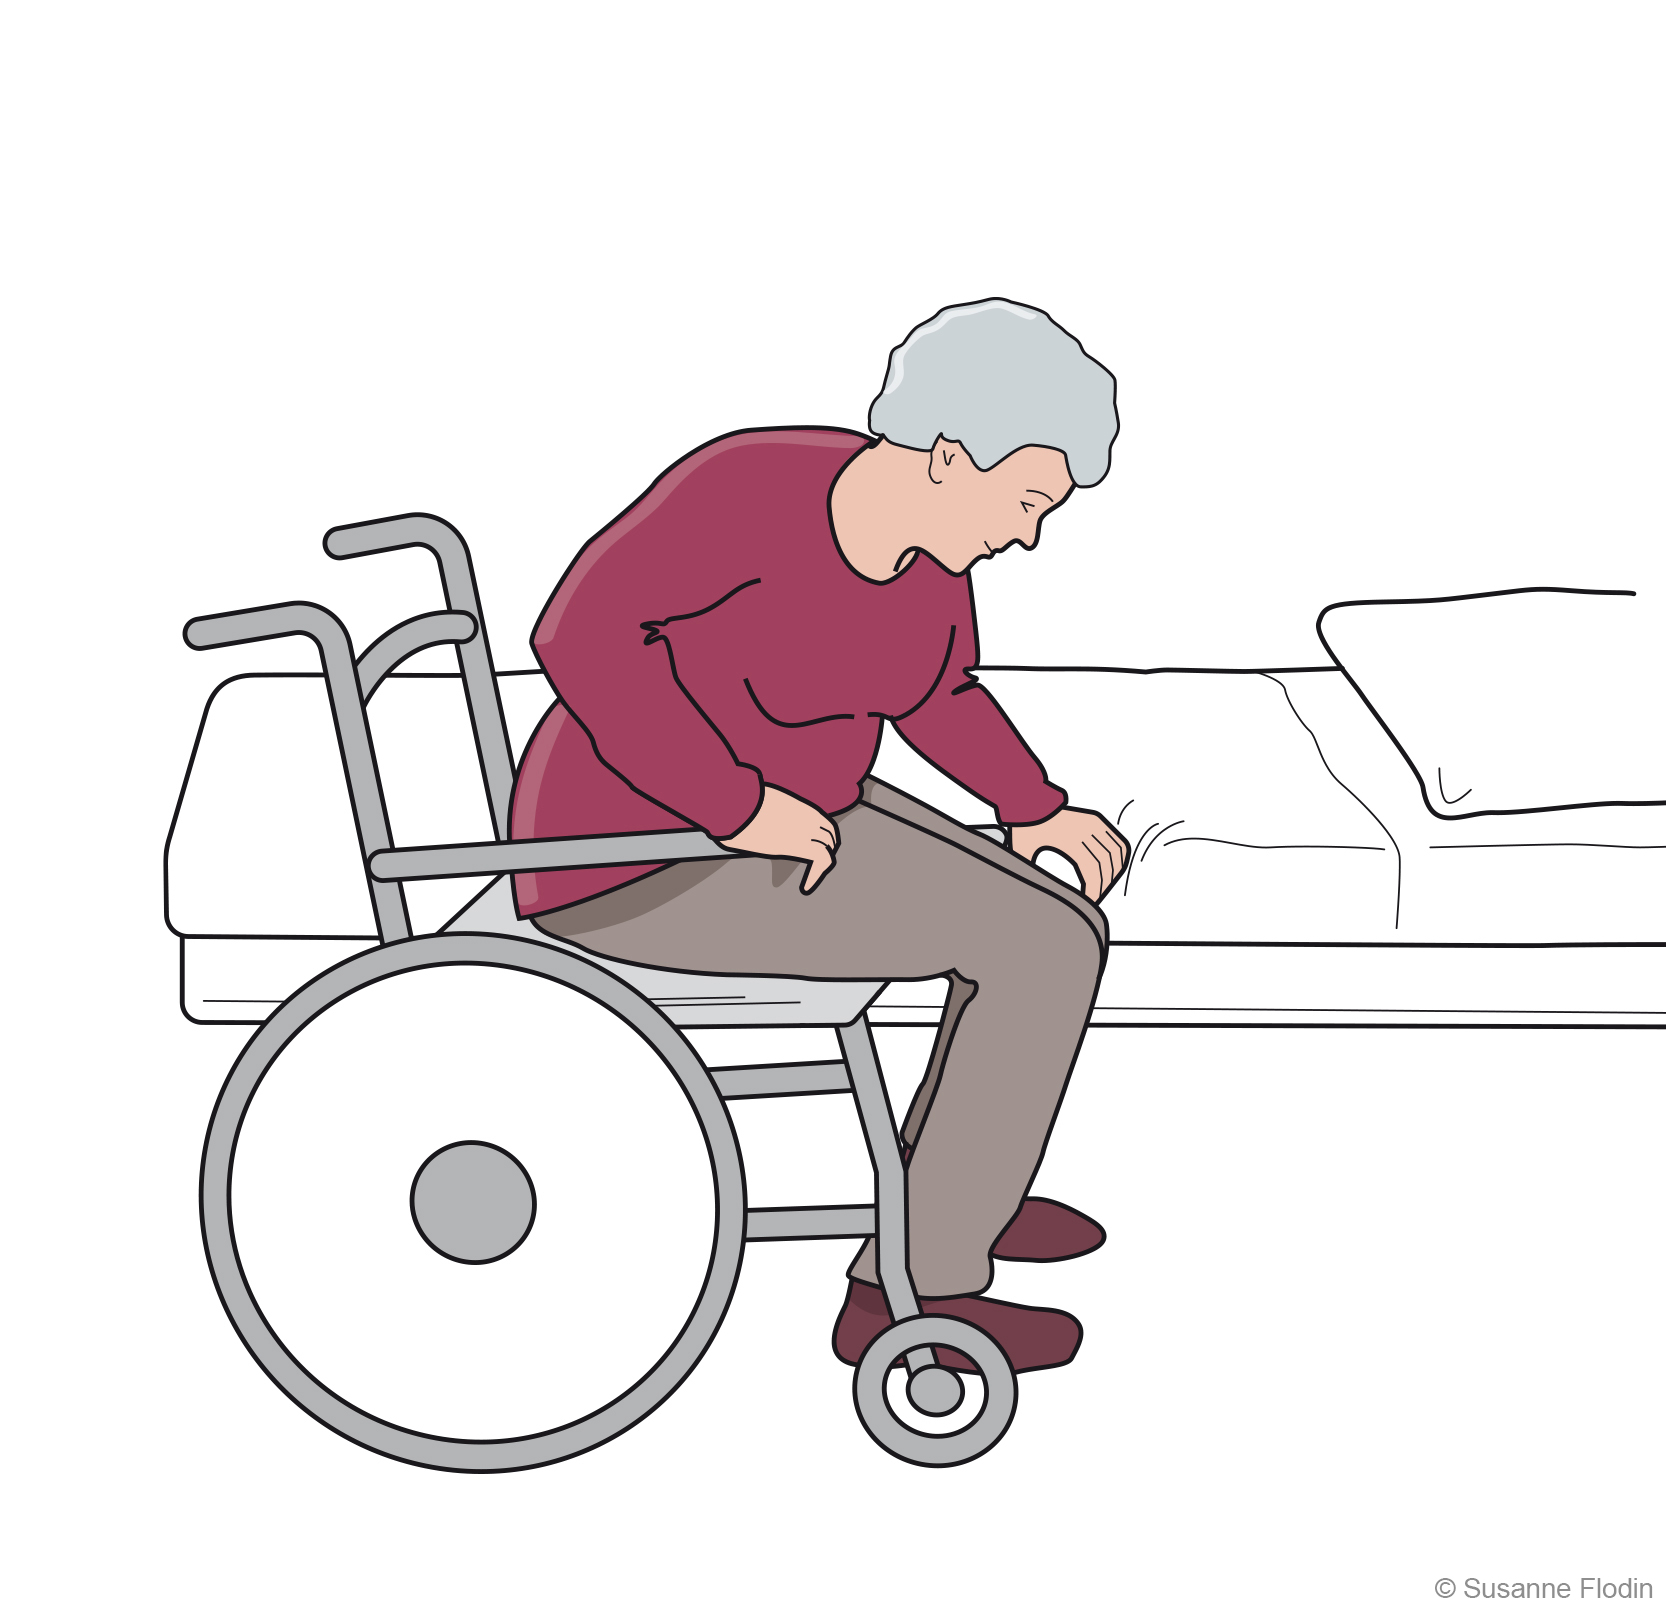 Bild som beskriver hur en person  flyttar från sängkant till rullstol på egen hand.